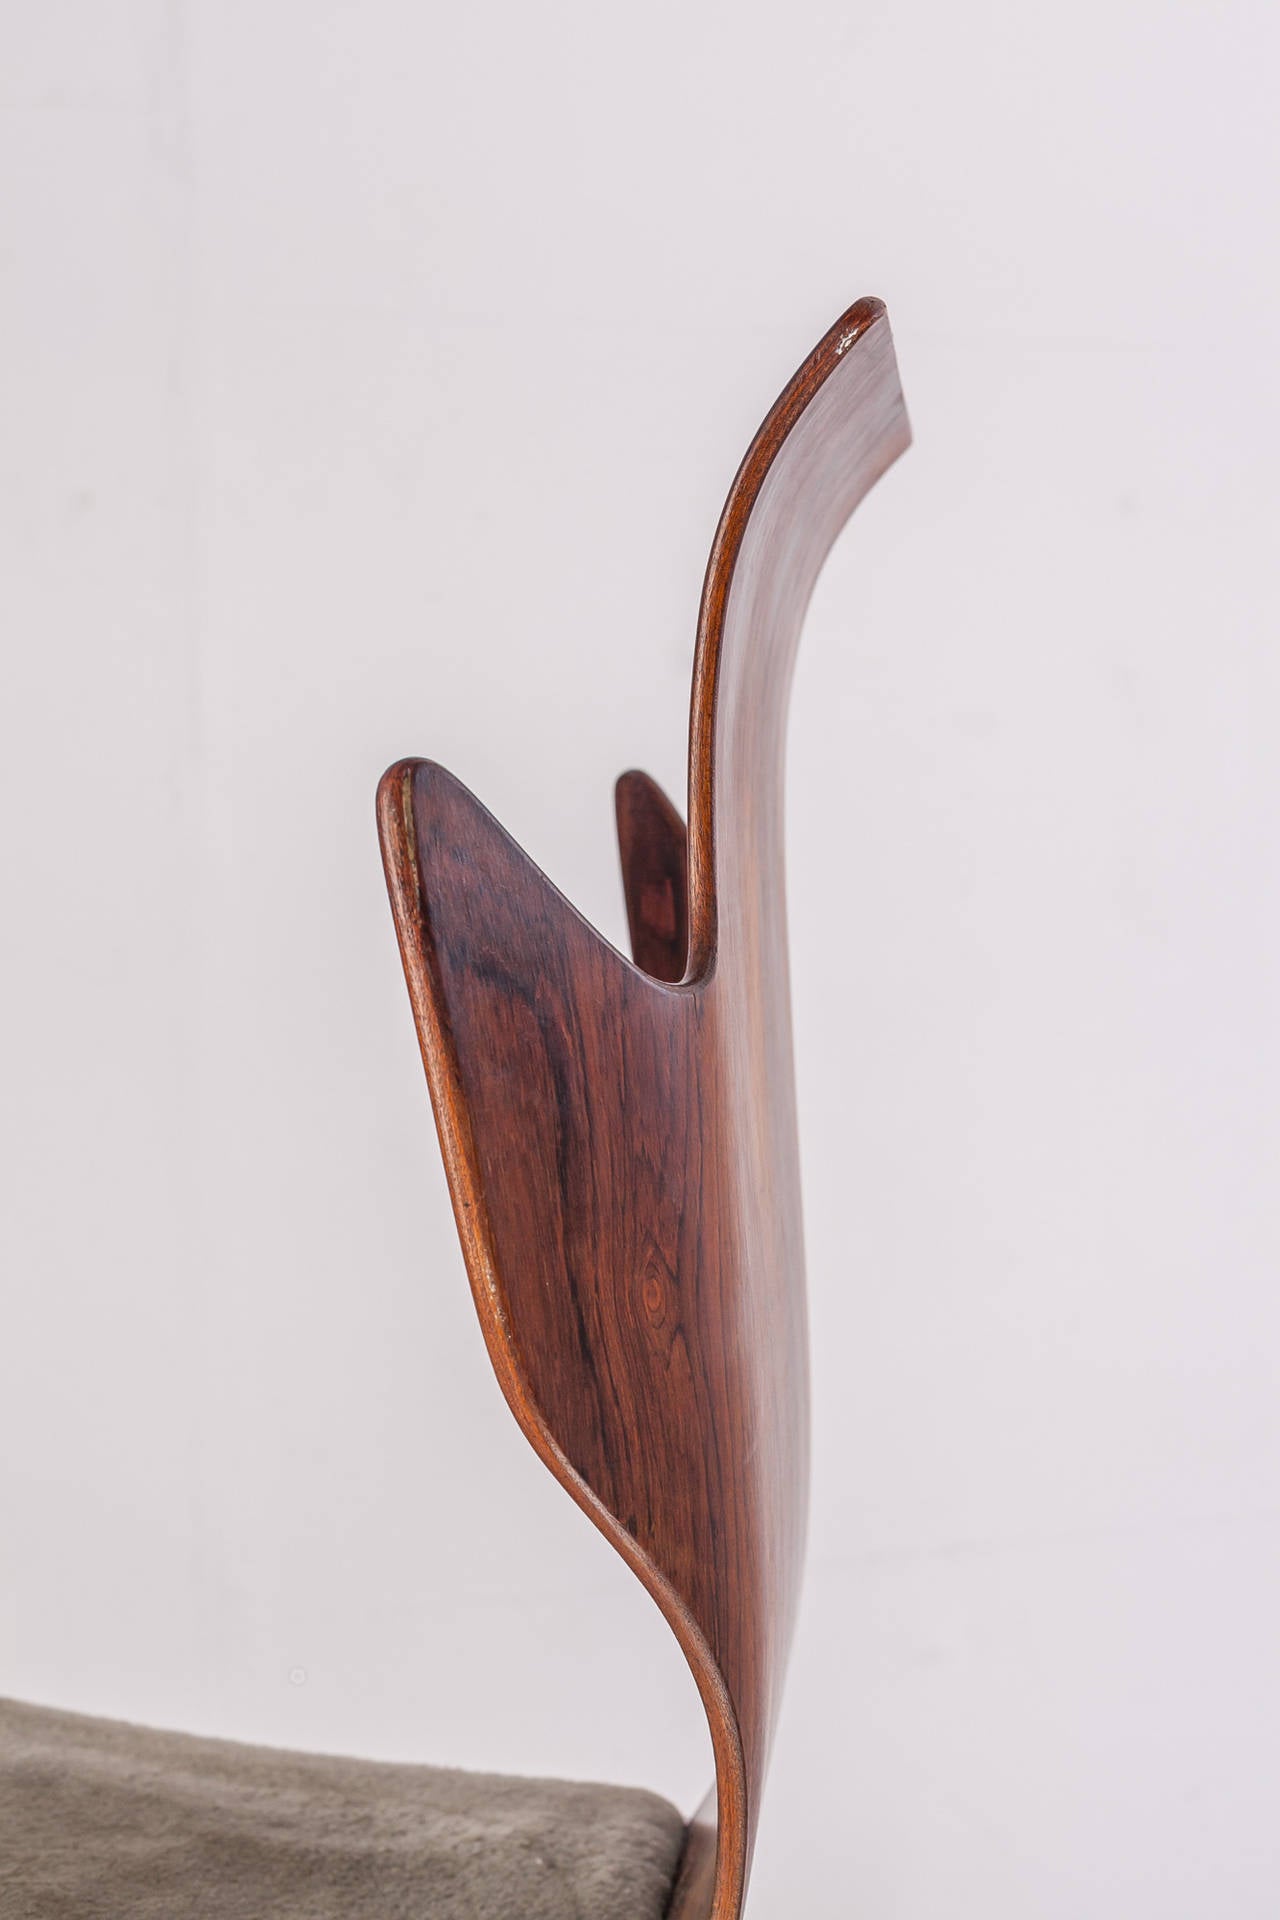 Dante Latorre Rare Pair of Chairs for Pozzi e Verga. Italian, 1960s For Sale 2